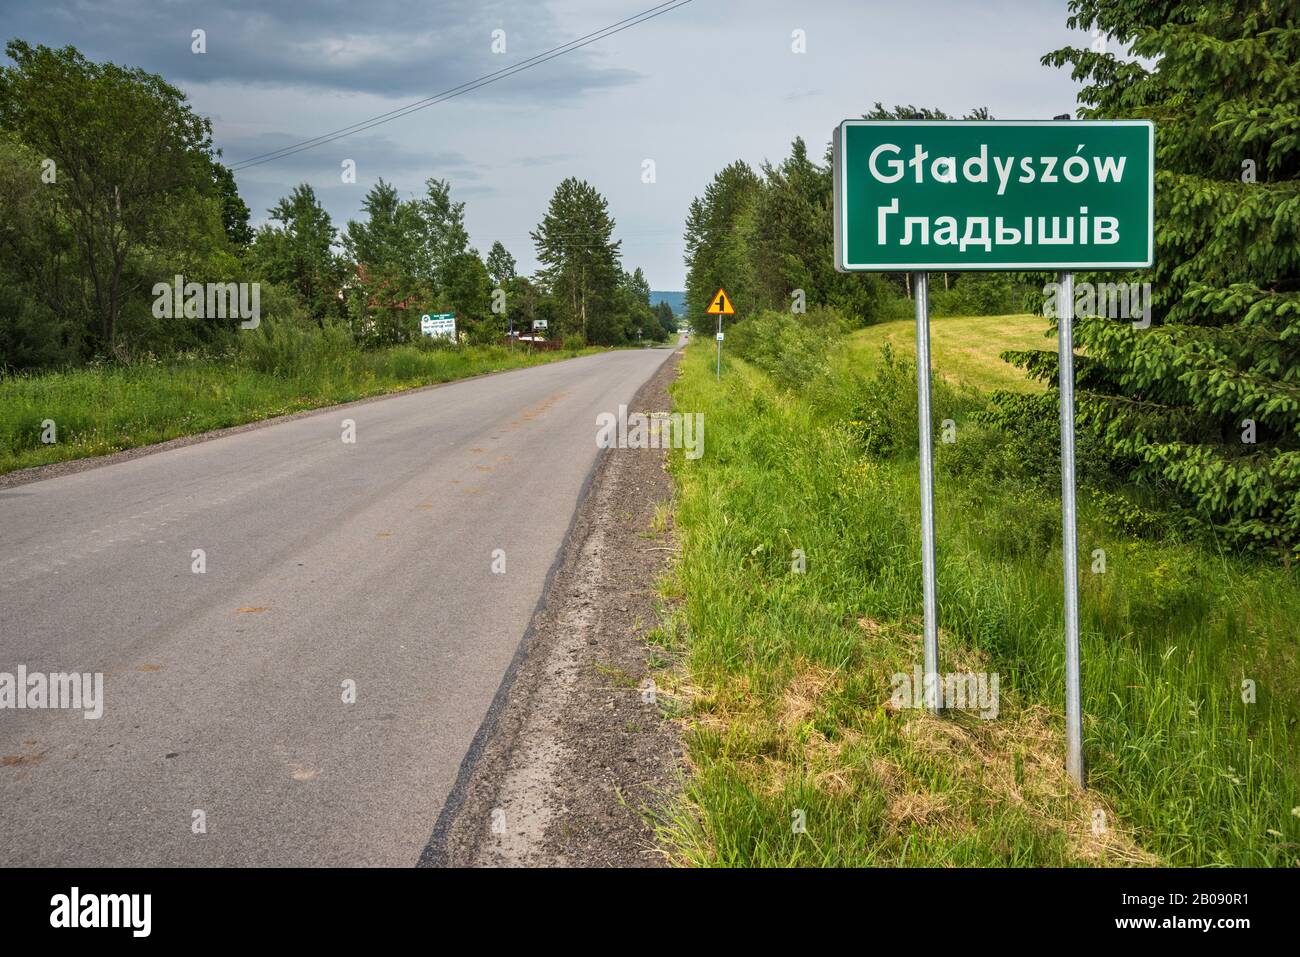 Bilingue, polacco e ucraino, cartello stradale nel villaggio di Gladyszow, Bassa catena montuosa Beskids, Carpazi occidentali, Malopolska, Polonia Foto Stock